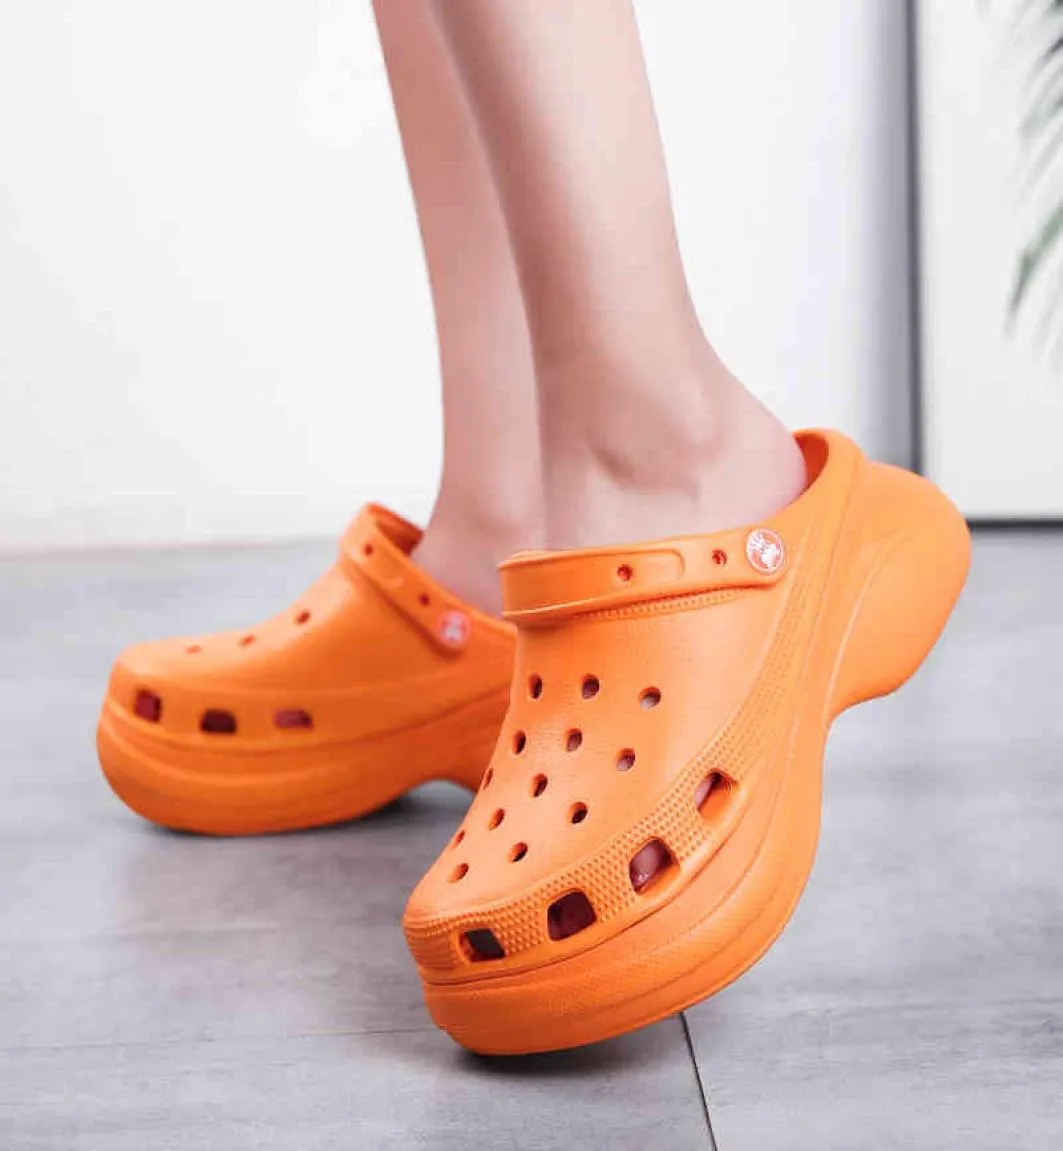 Sandalias de zapatos para mujeres de la obstrucción 2021 Sandalias de plataforma Garden Slippers Slip On for Girl Beach Shops Fashion Slides al aire libre X05239872653